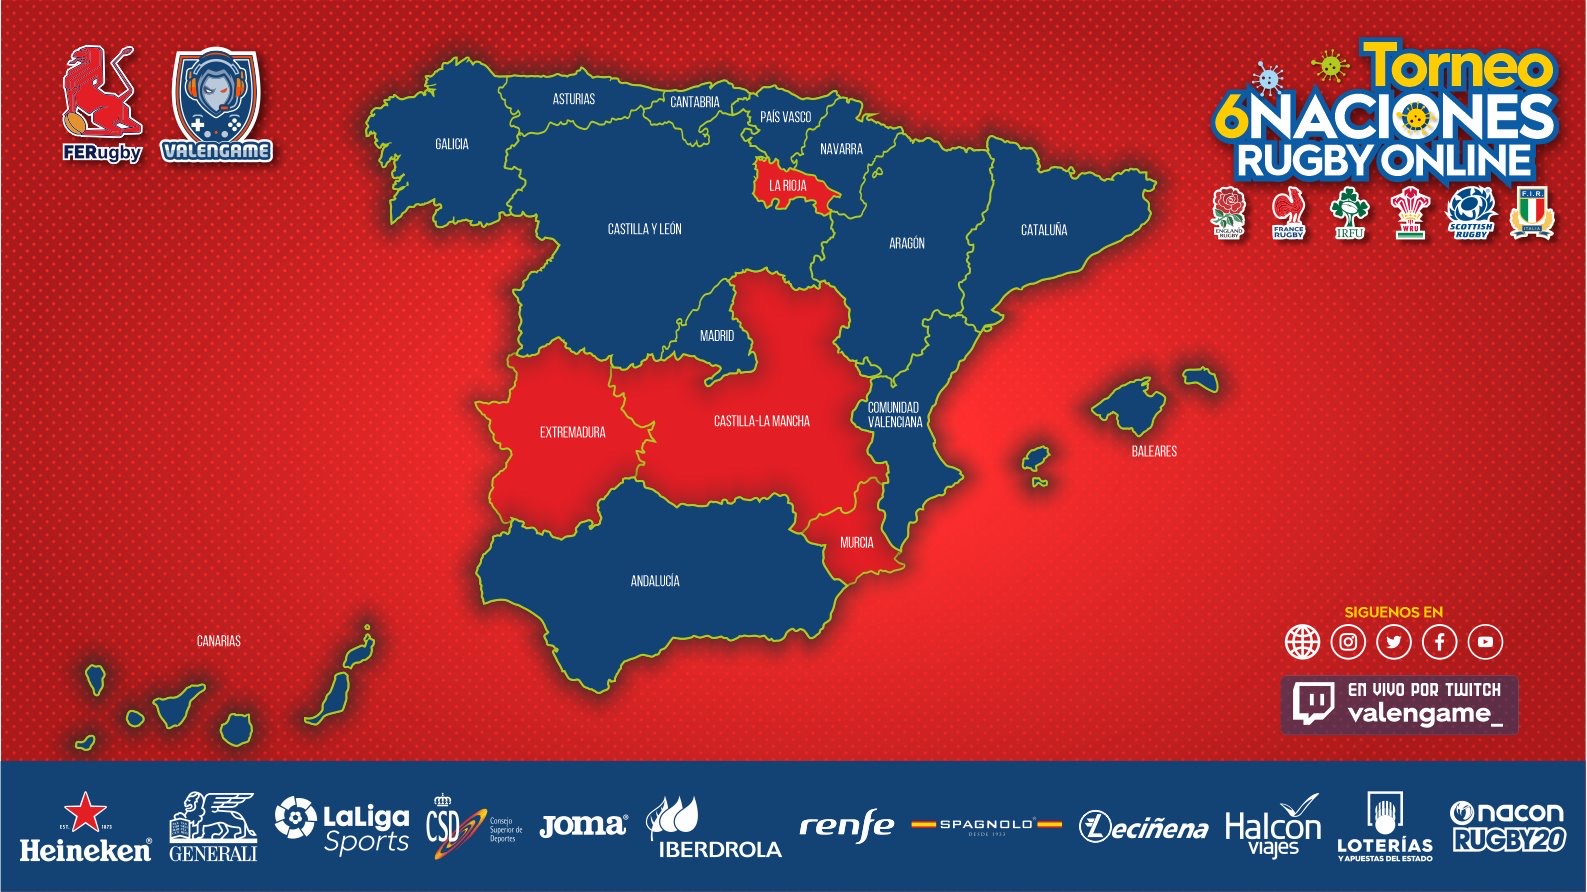 El rugby online lleva el balón oval a todos los rincones de España